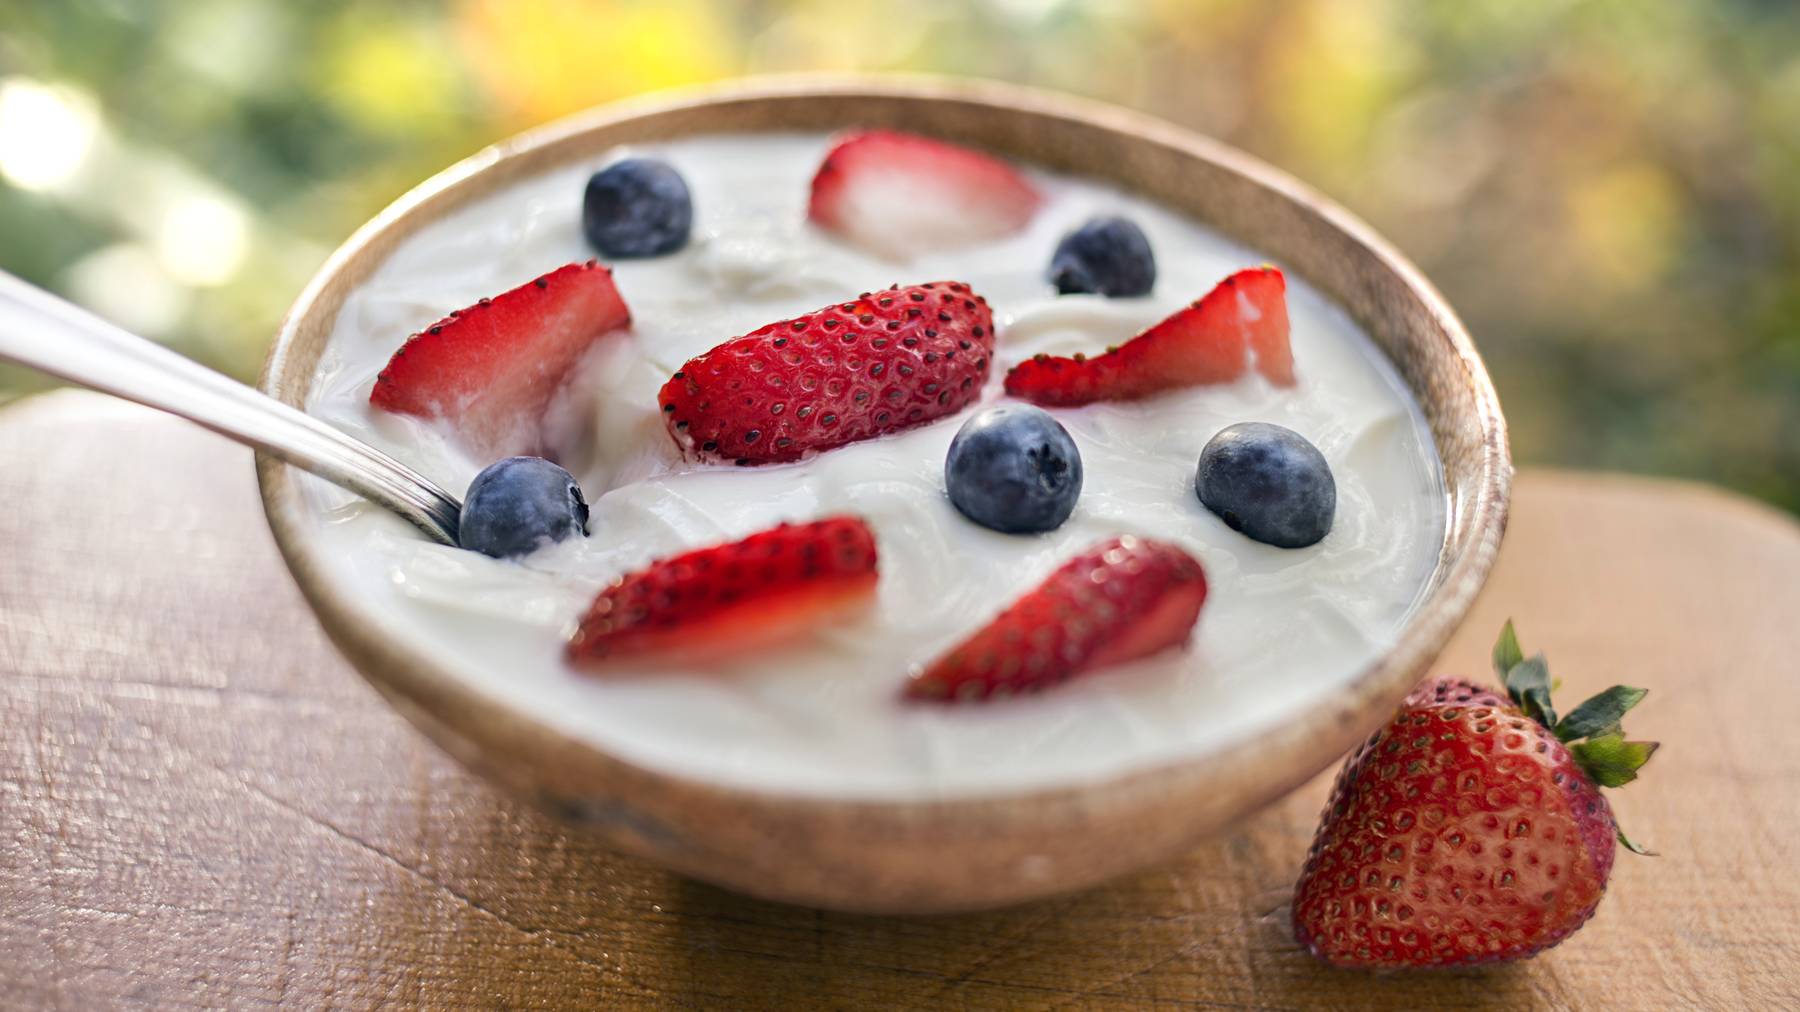 Frische Früchte und Joghurt liefern Energie und helfen gegen Stress.